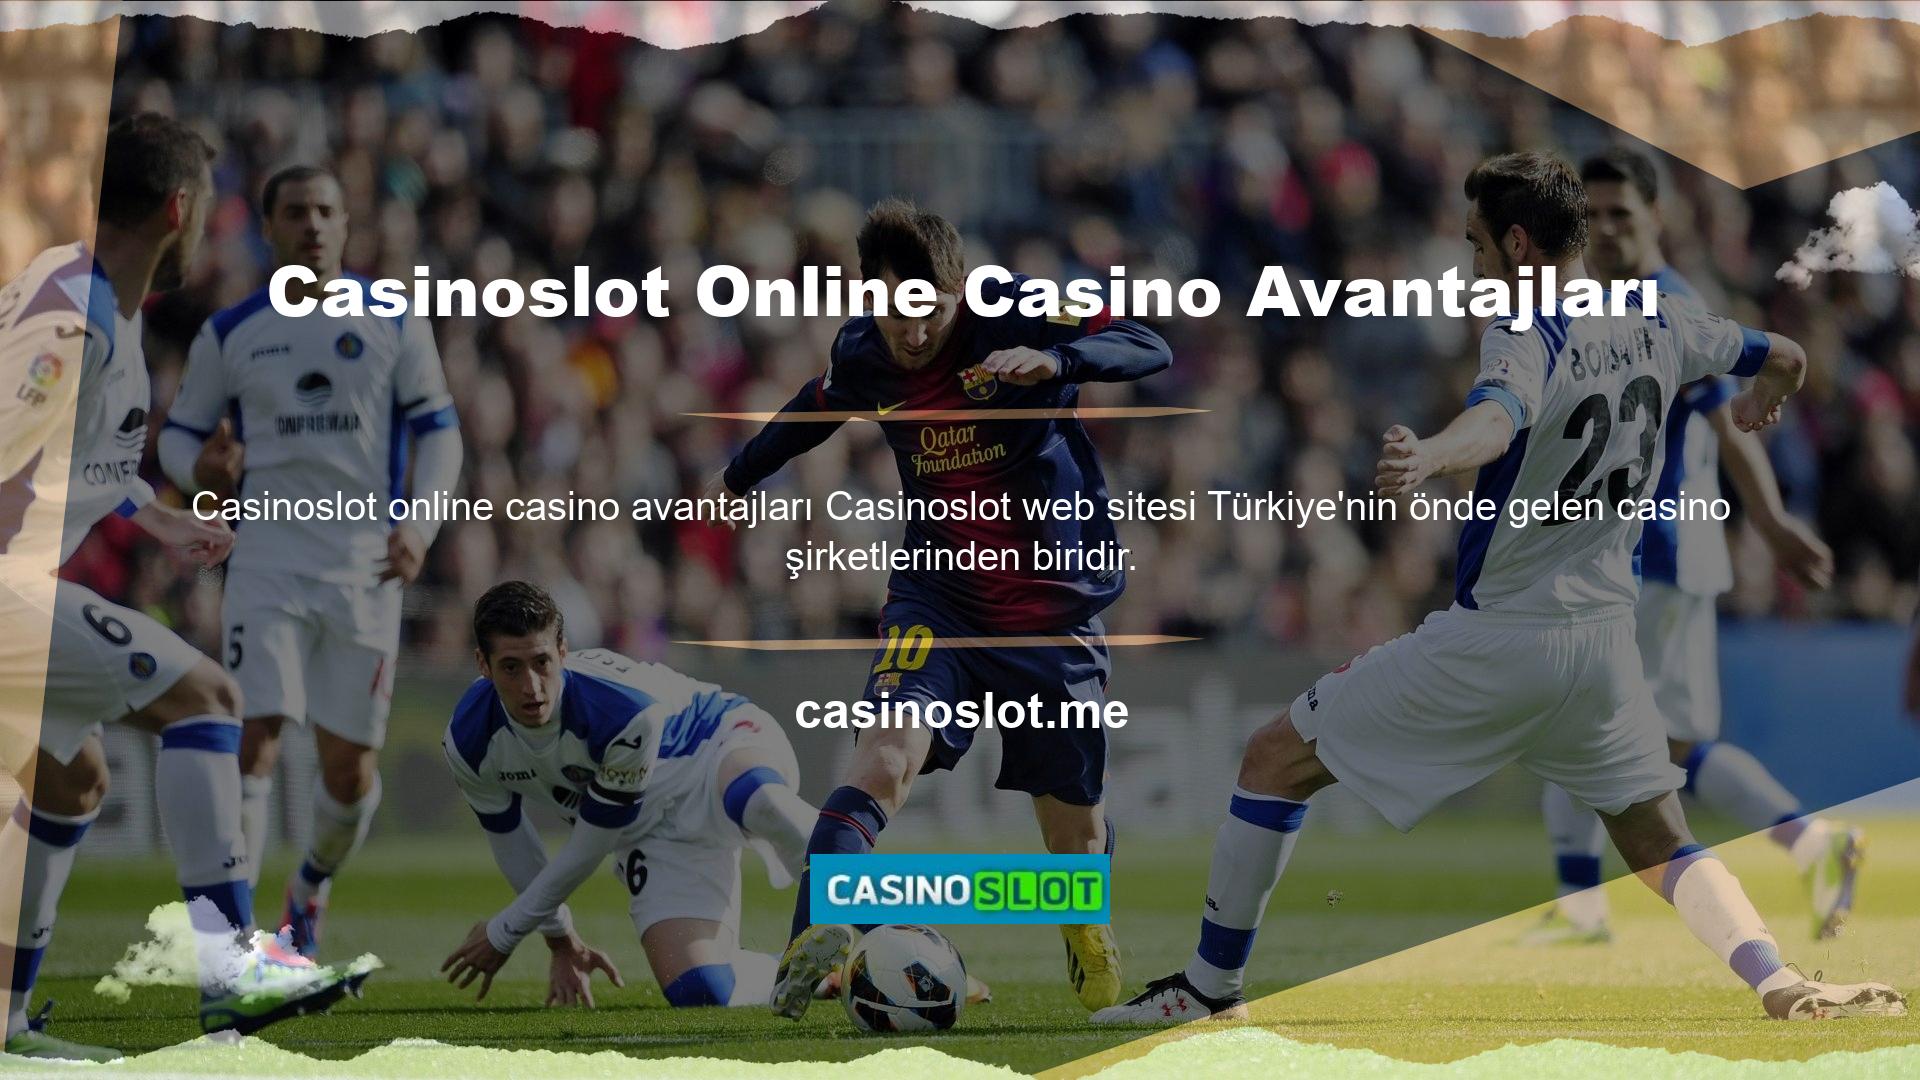 Türk oyun meraklılarına Türkçe dil imkanı sunan özel bir casino şirketidir